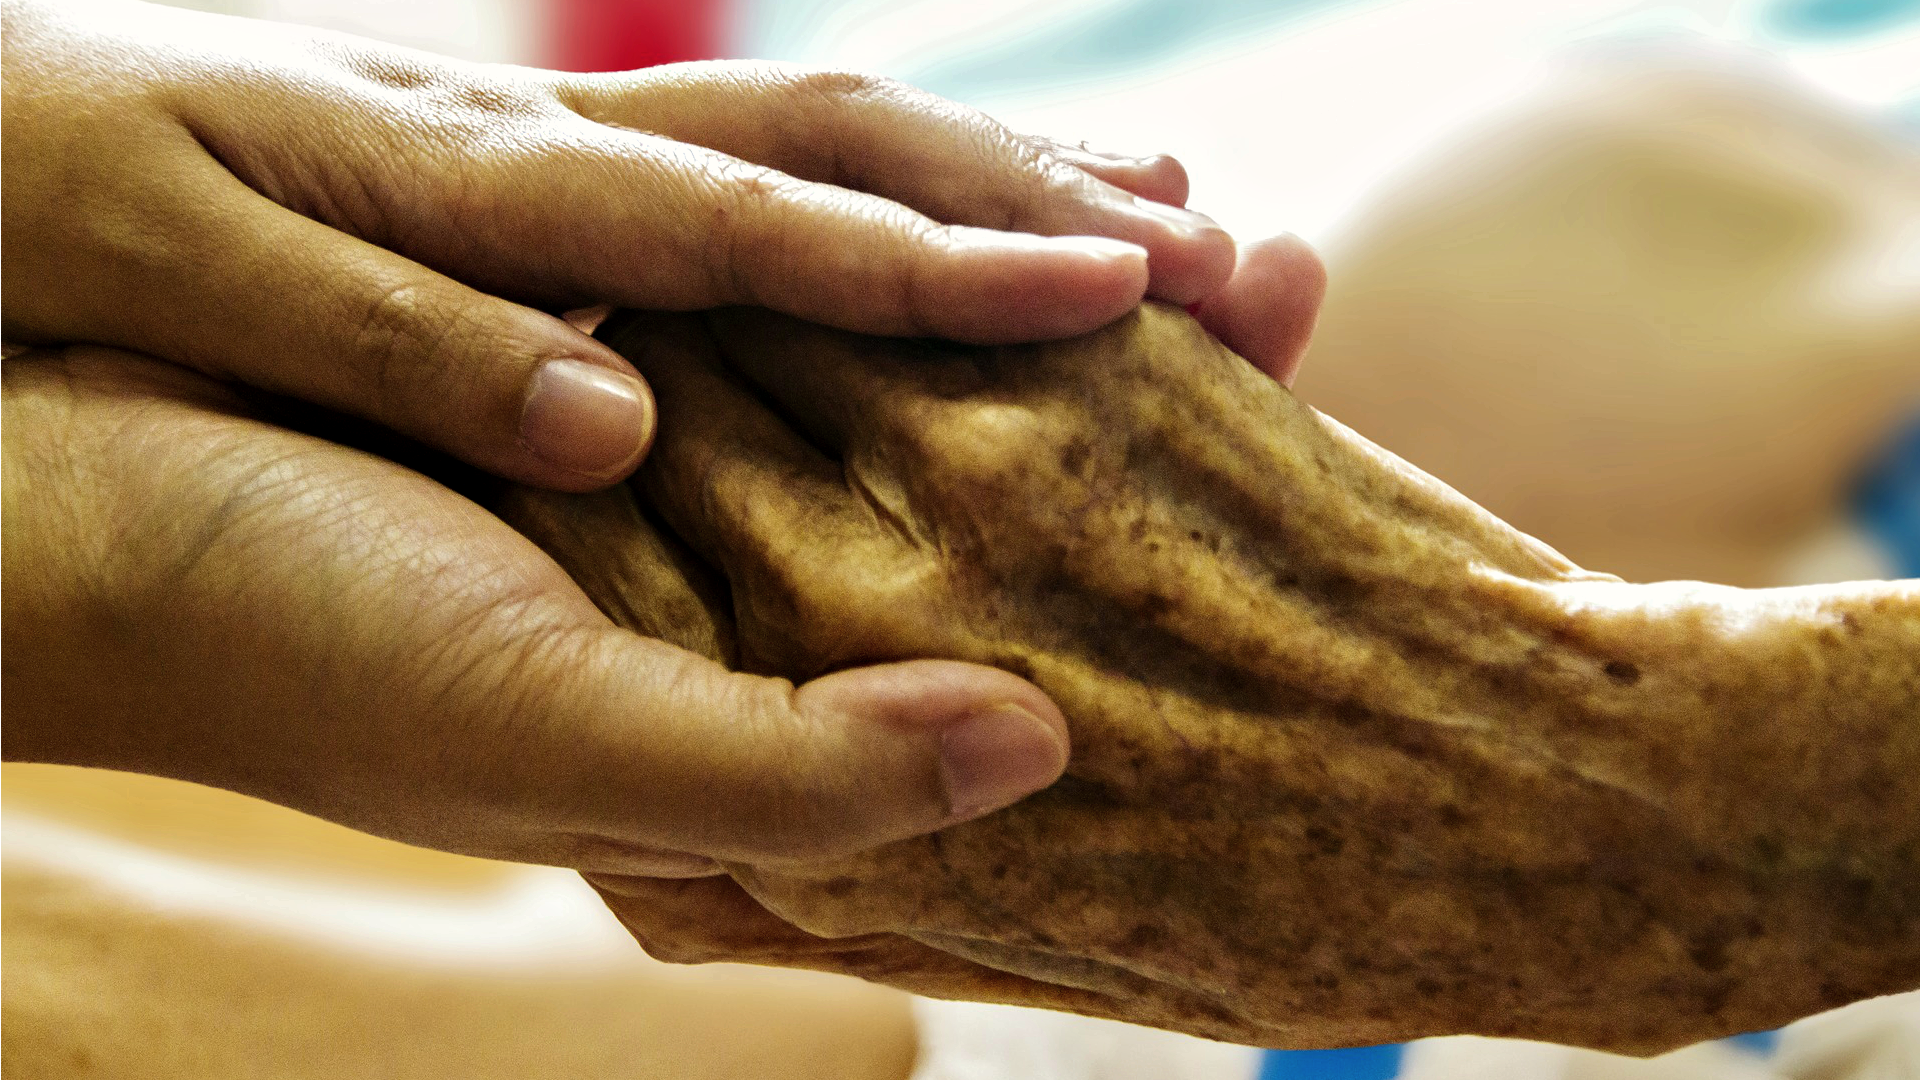 L'Eglise veut mieux coordonner son aide spirituelle au sein des soins palliatifs (Photo d'illustration:Pixabay.com)